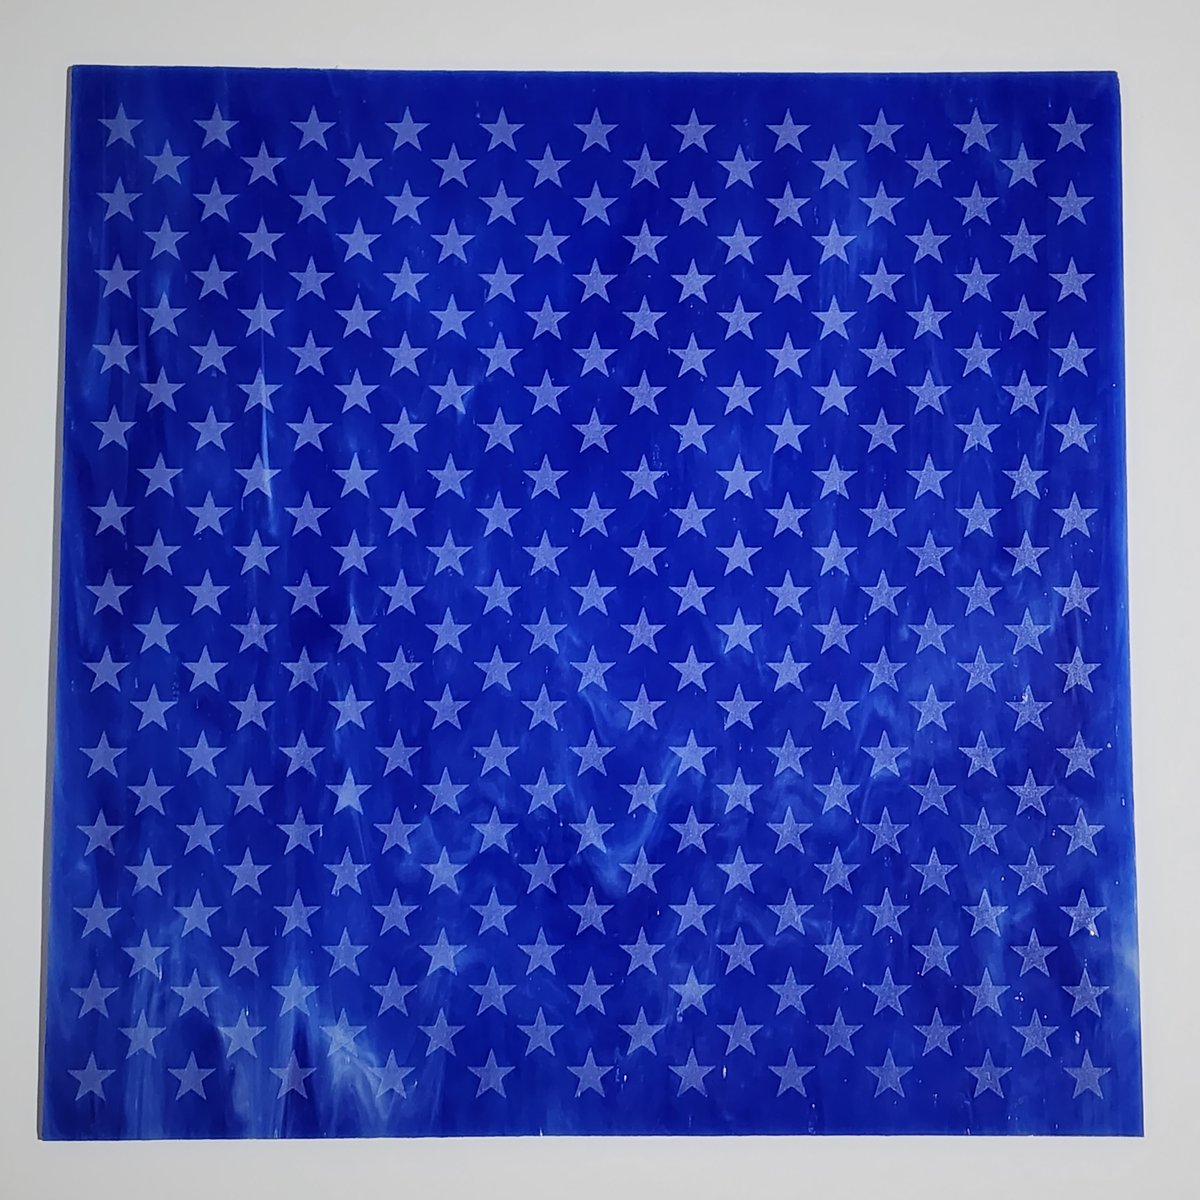 Star laser engraved 12x12 glass sheet dark blue/white wispy opaque